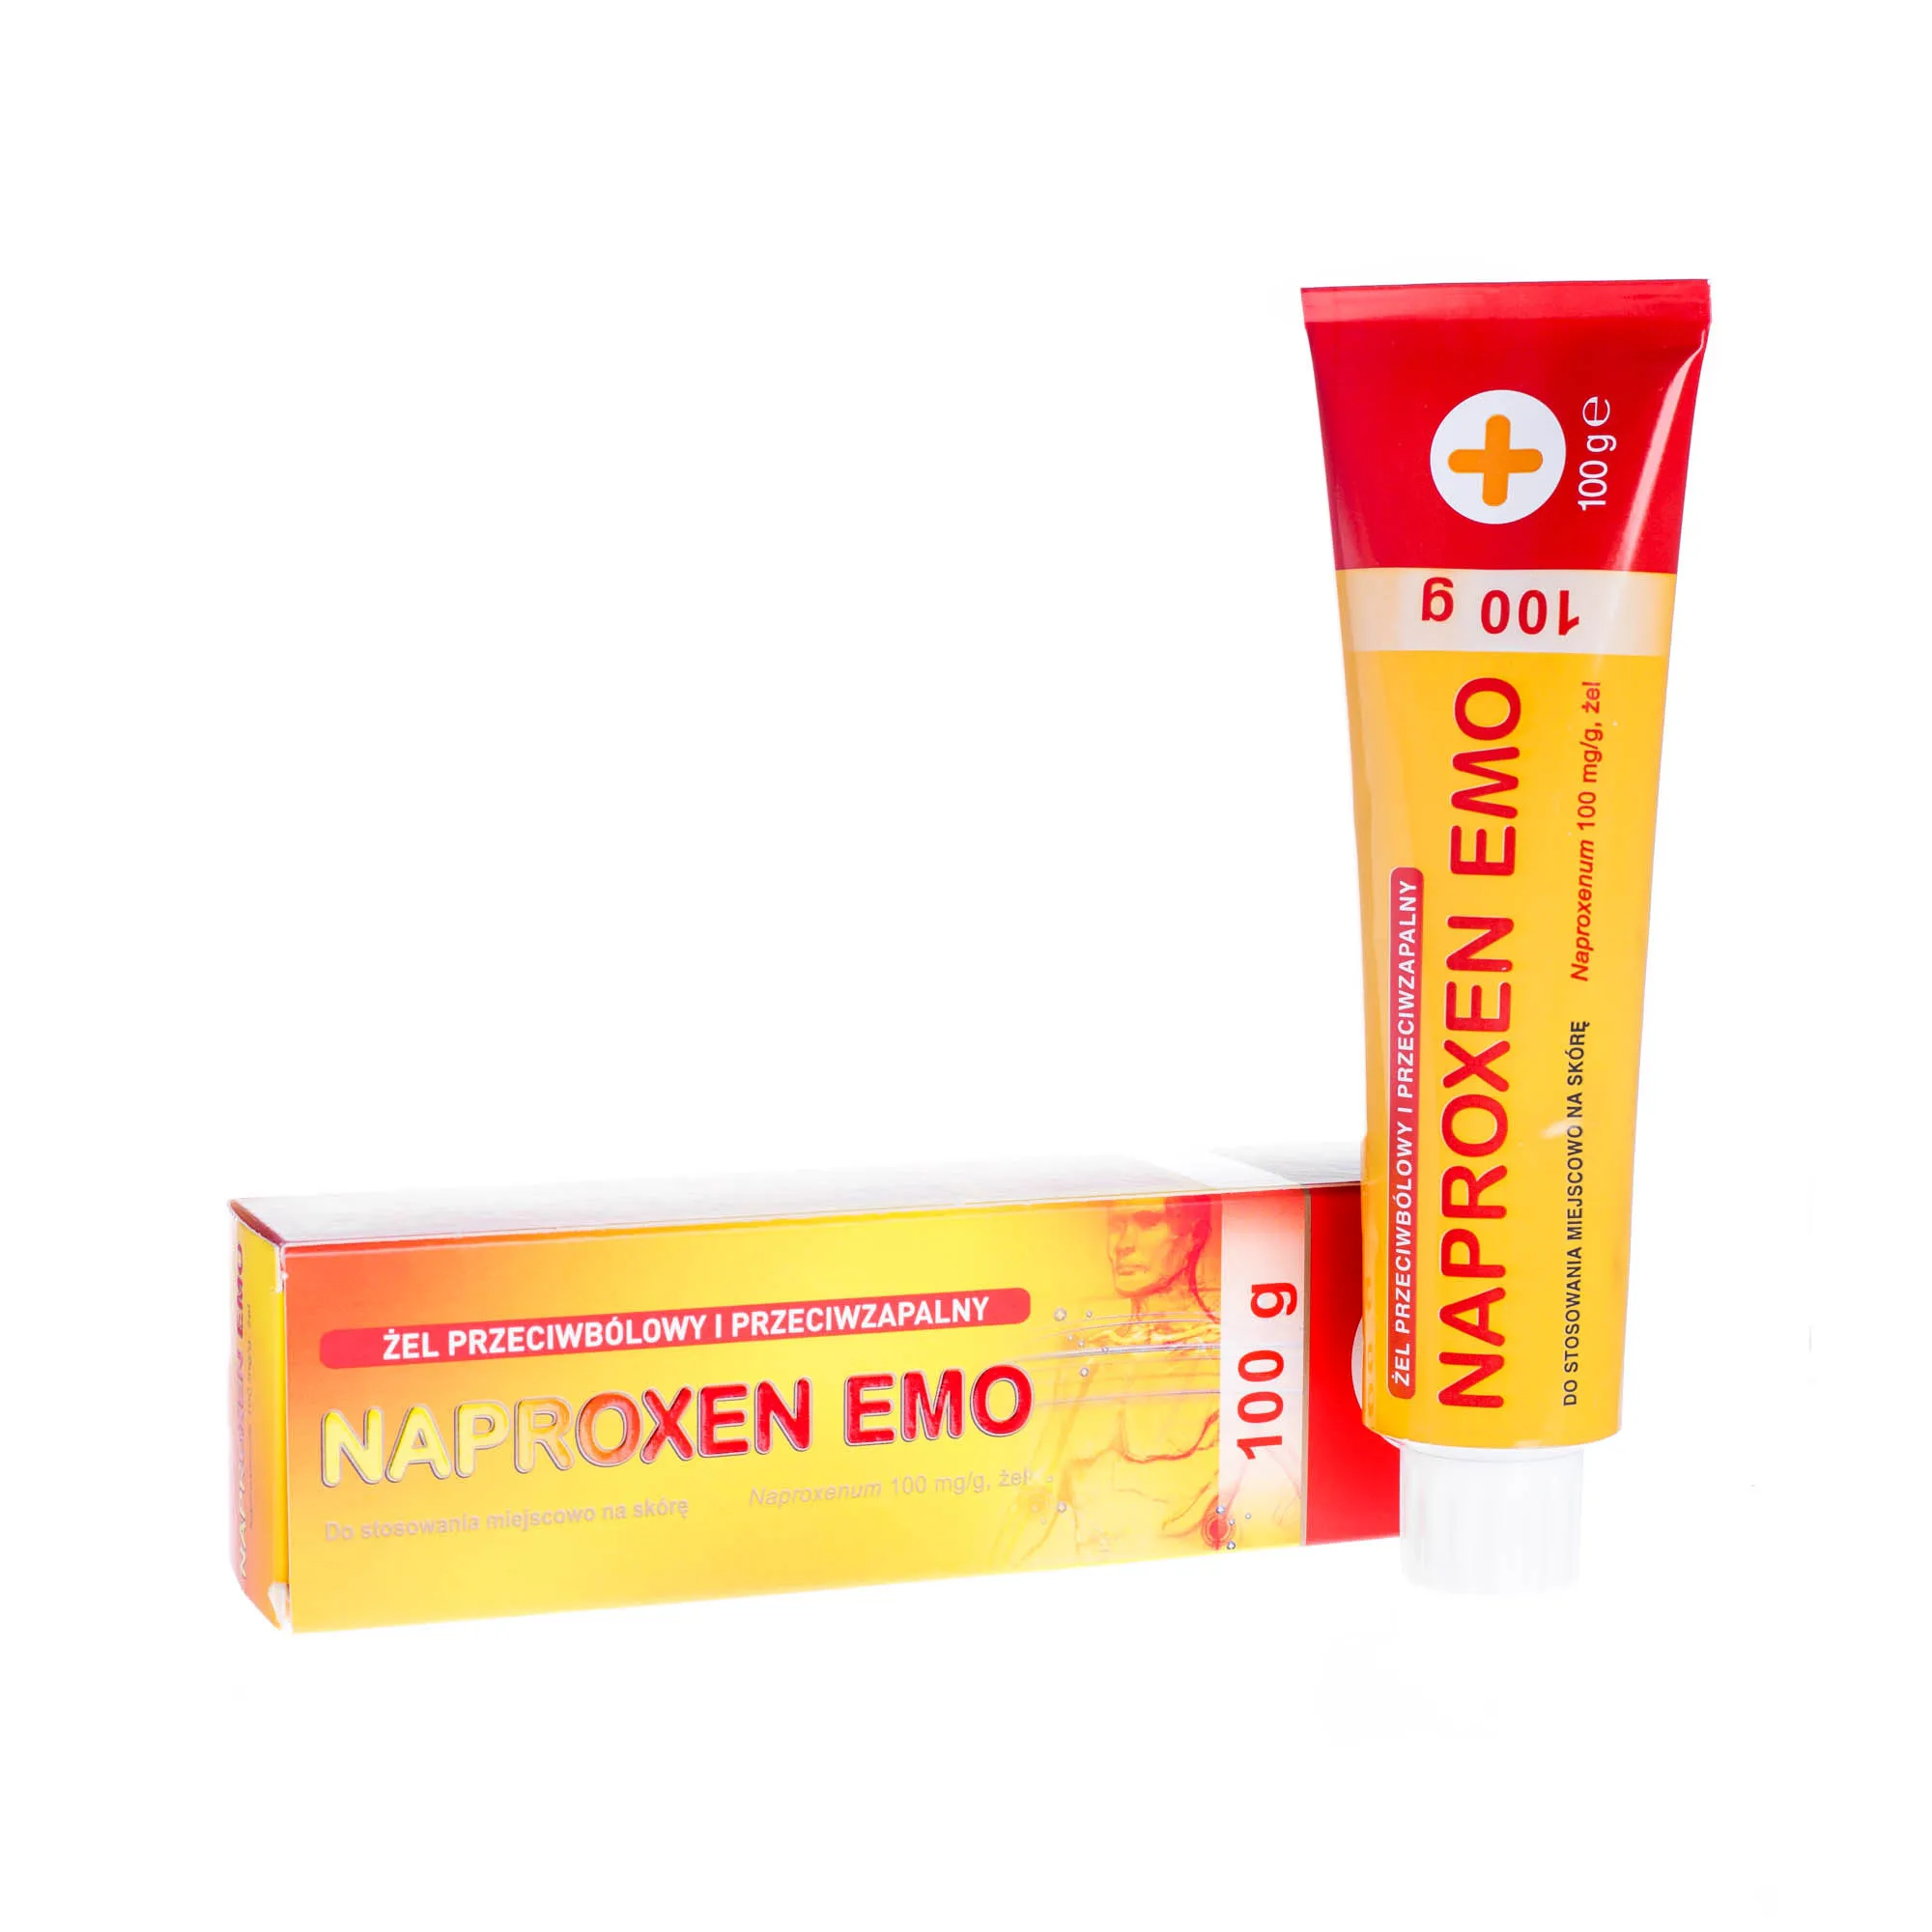 Naproxen Emo 100 mg/g - żel przeciwbólowy i przeciwzapalny, 100 g